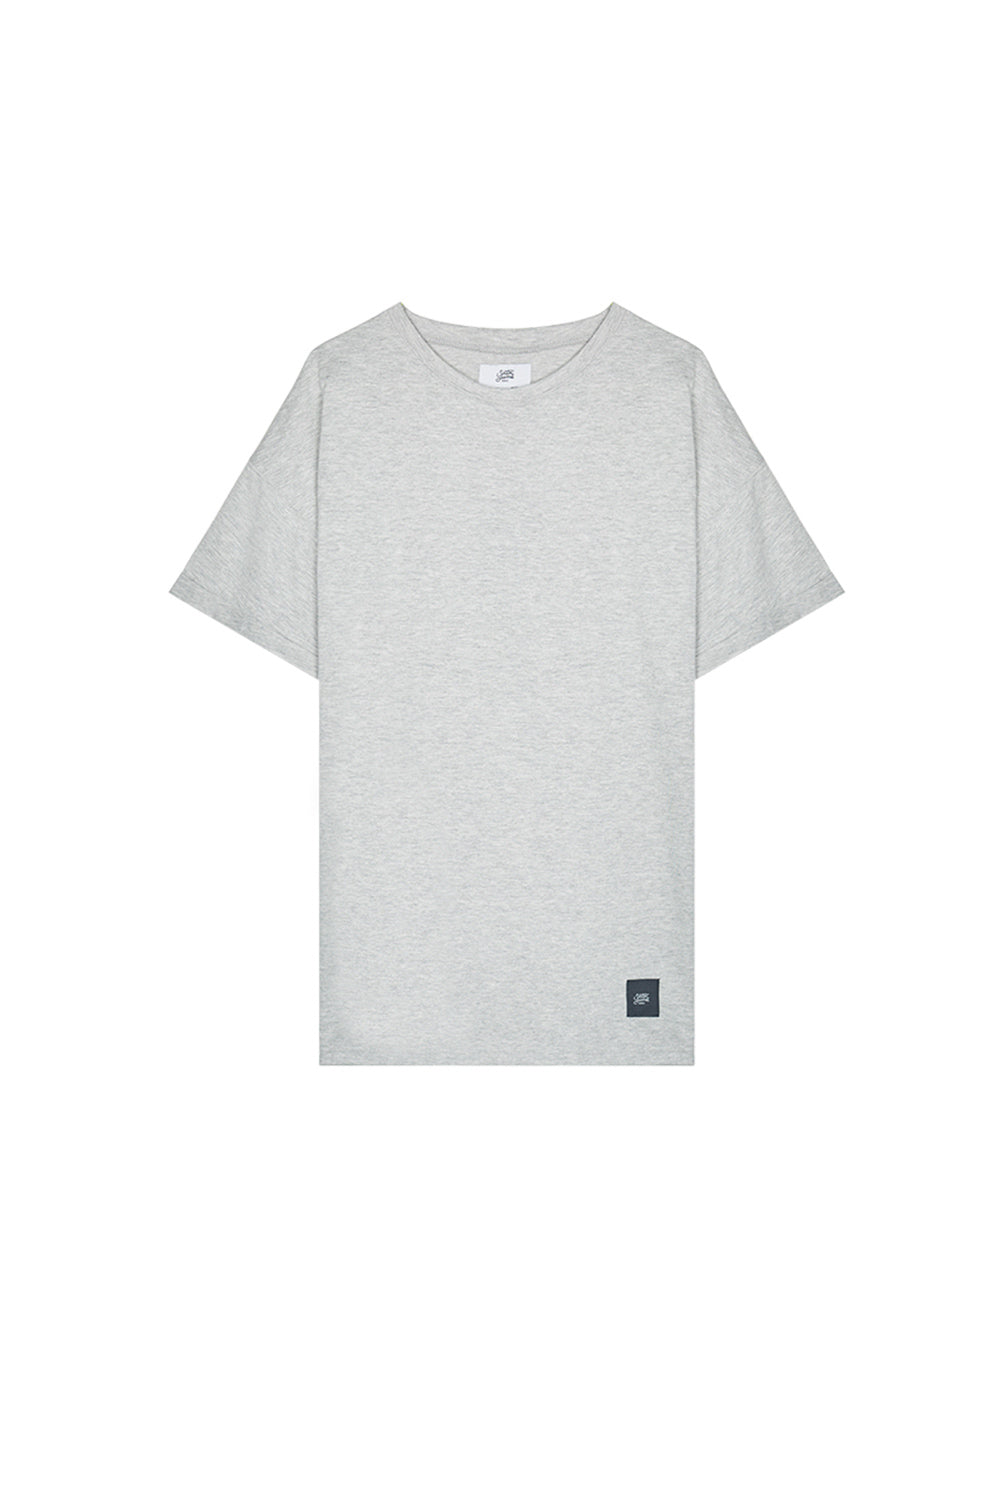 Sixth June - T-shirt épaules tombantes gris clair